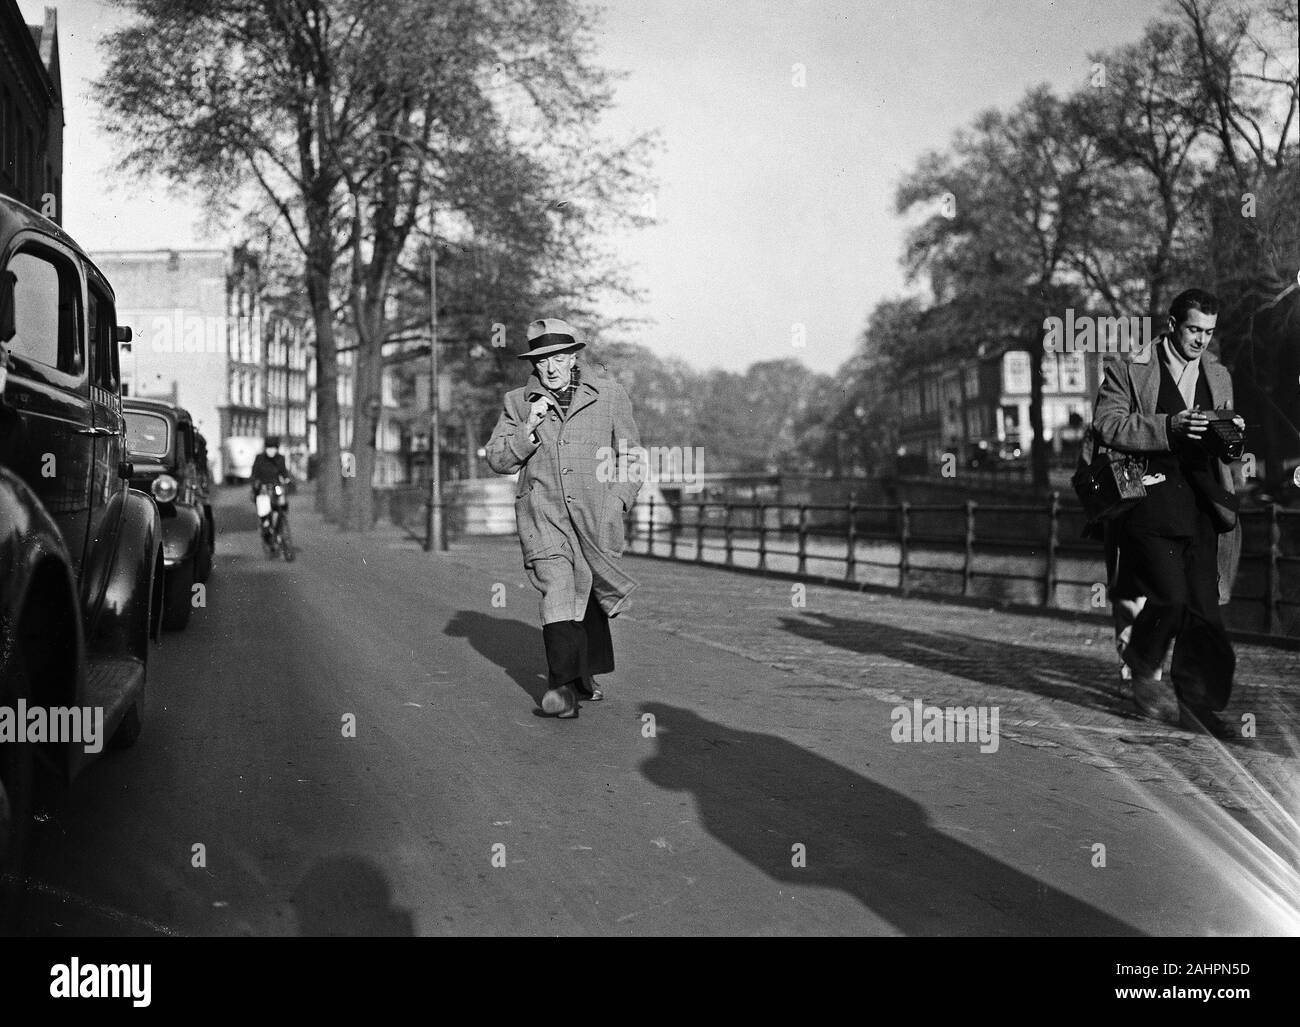 Van Meegeren on his way to the court of justice Date October 29, 1947 Stock Photo